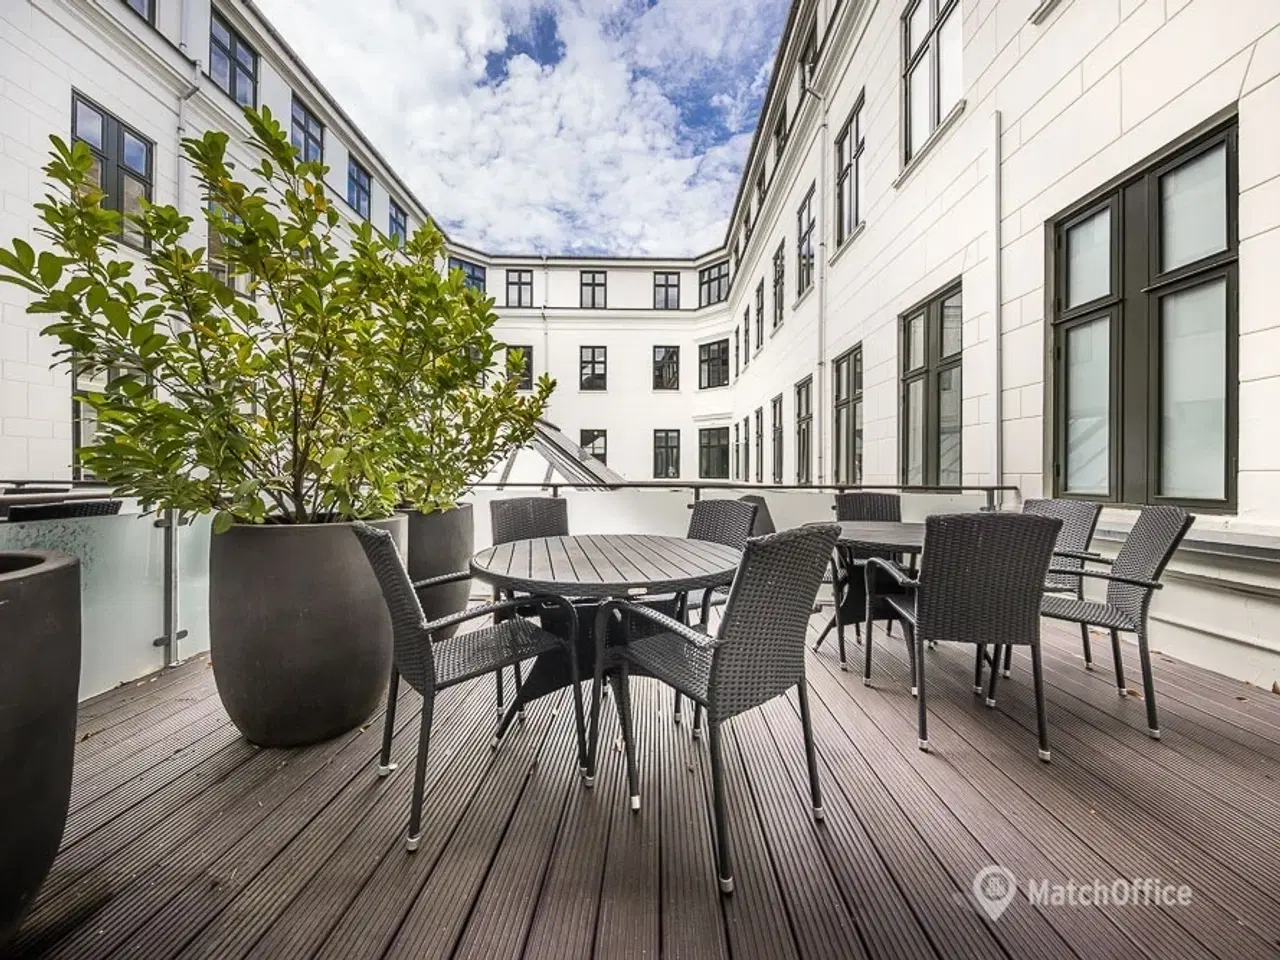 Billede 3 - 387 m² kontor med egen terrasse tæt på Kultorvet